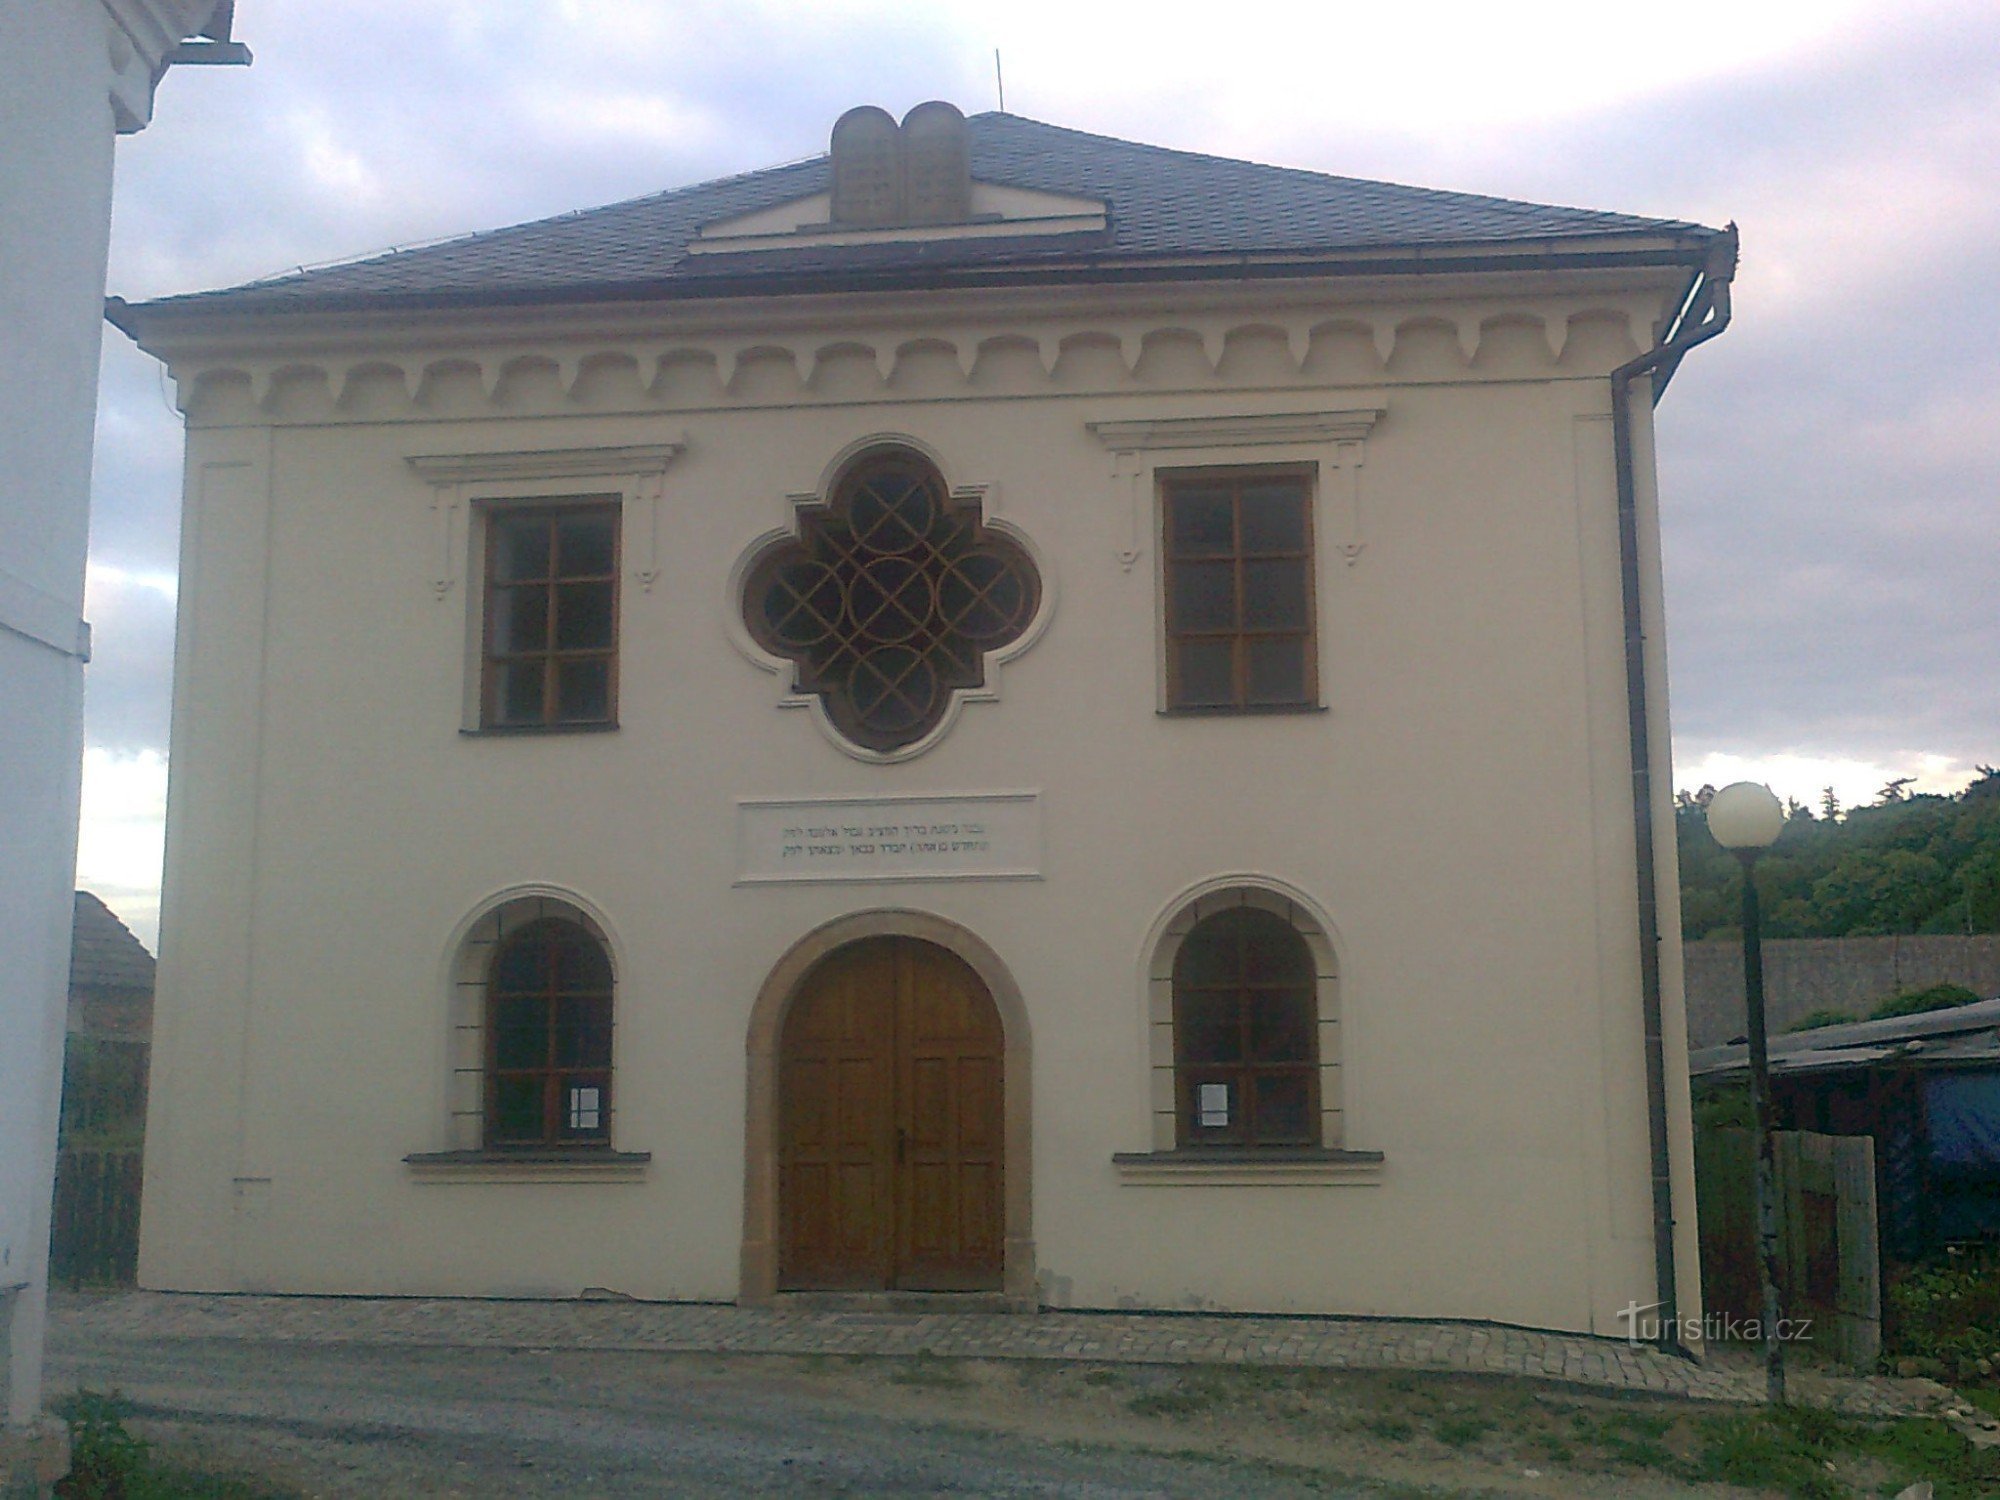 Úsov - Judisk synagoga